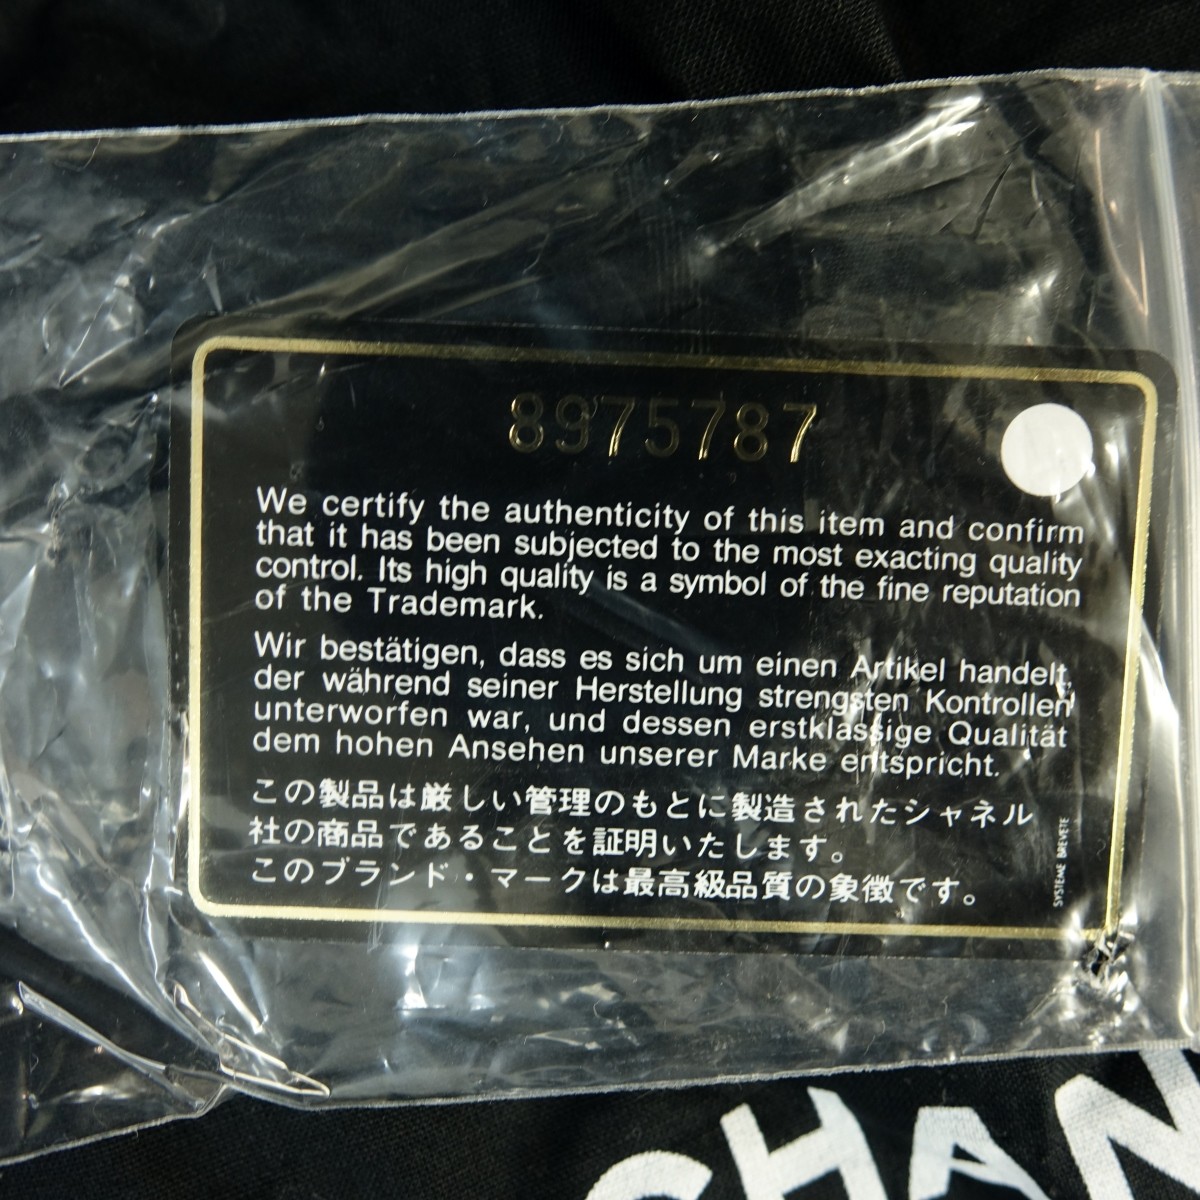 Chanel Bag